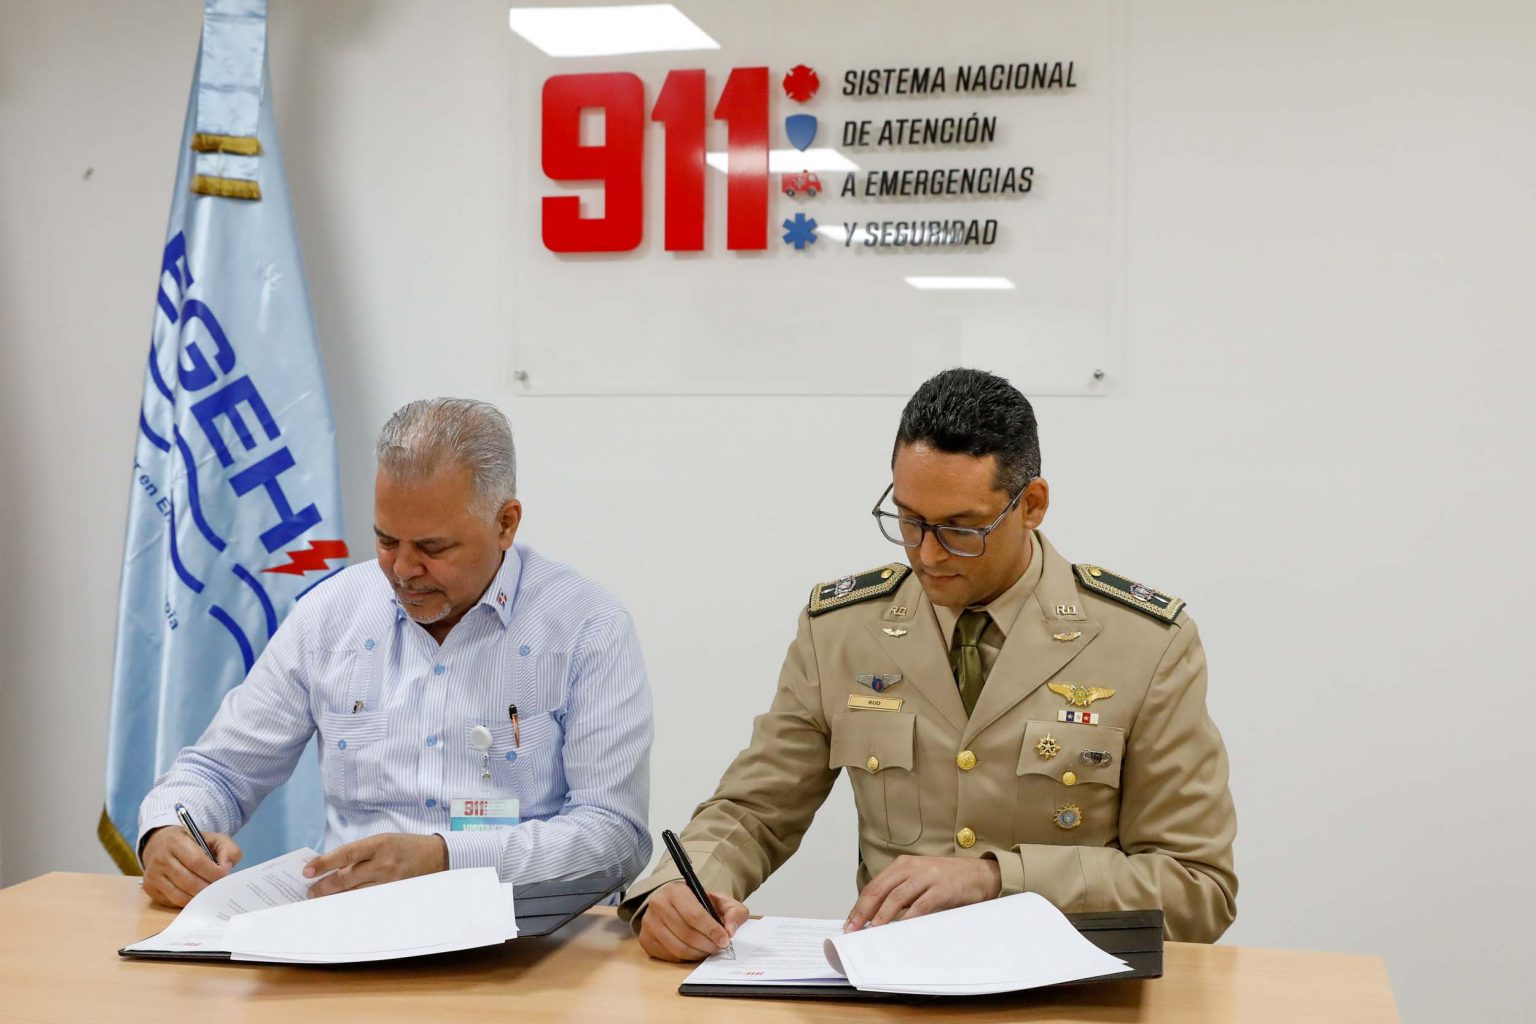 EGEHID y Sistema 911 firman acuerdo de colaboracion